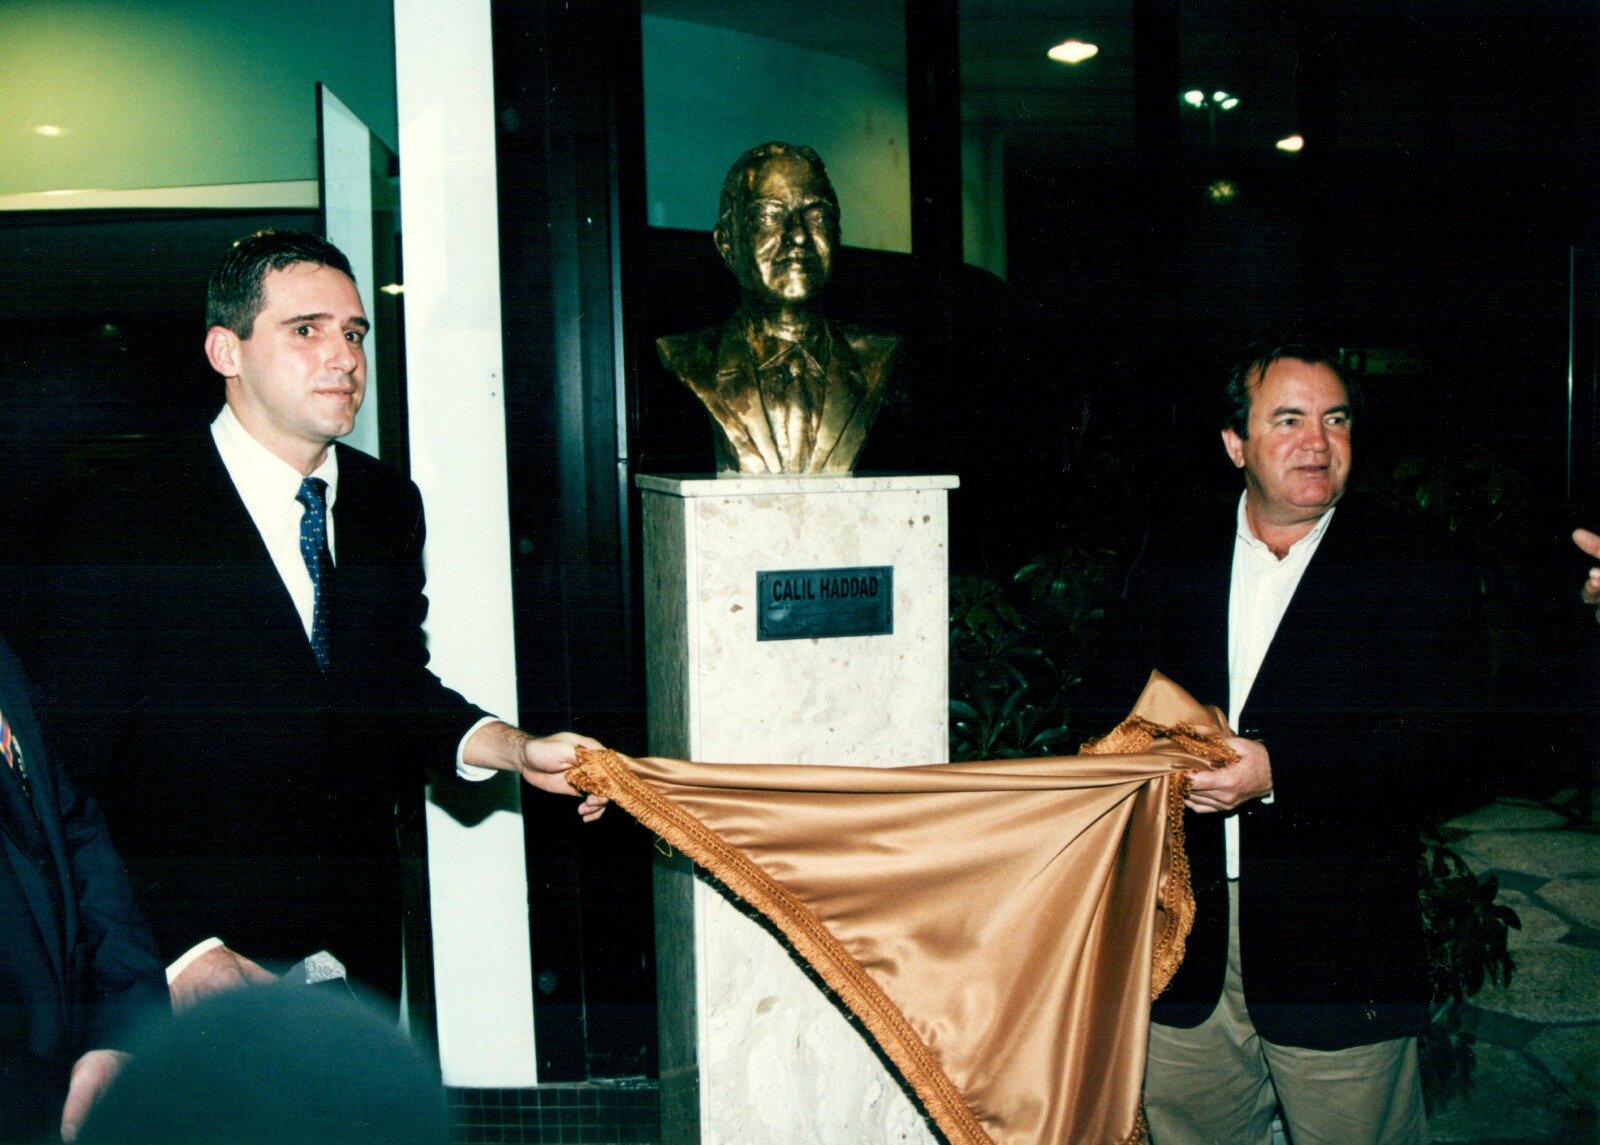 Inauguração do busto de Calil Haddad - 2001